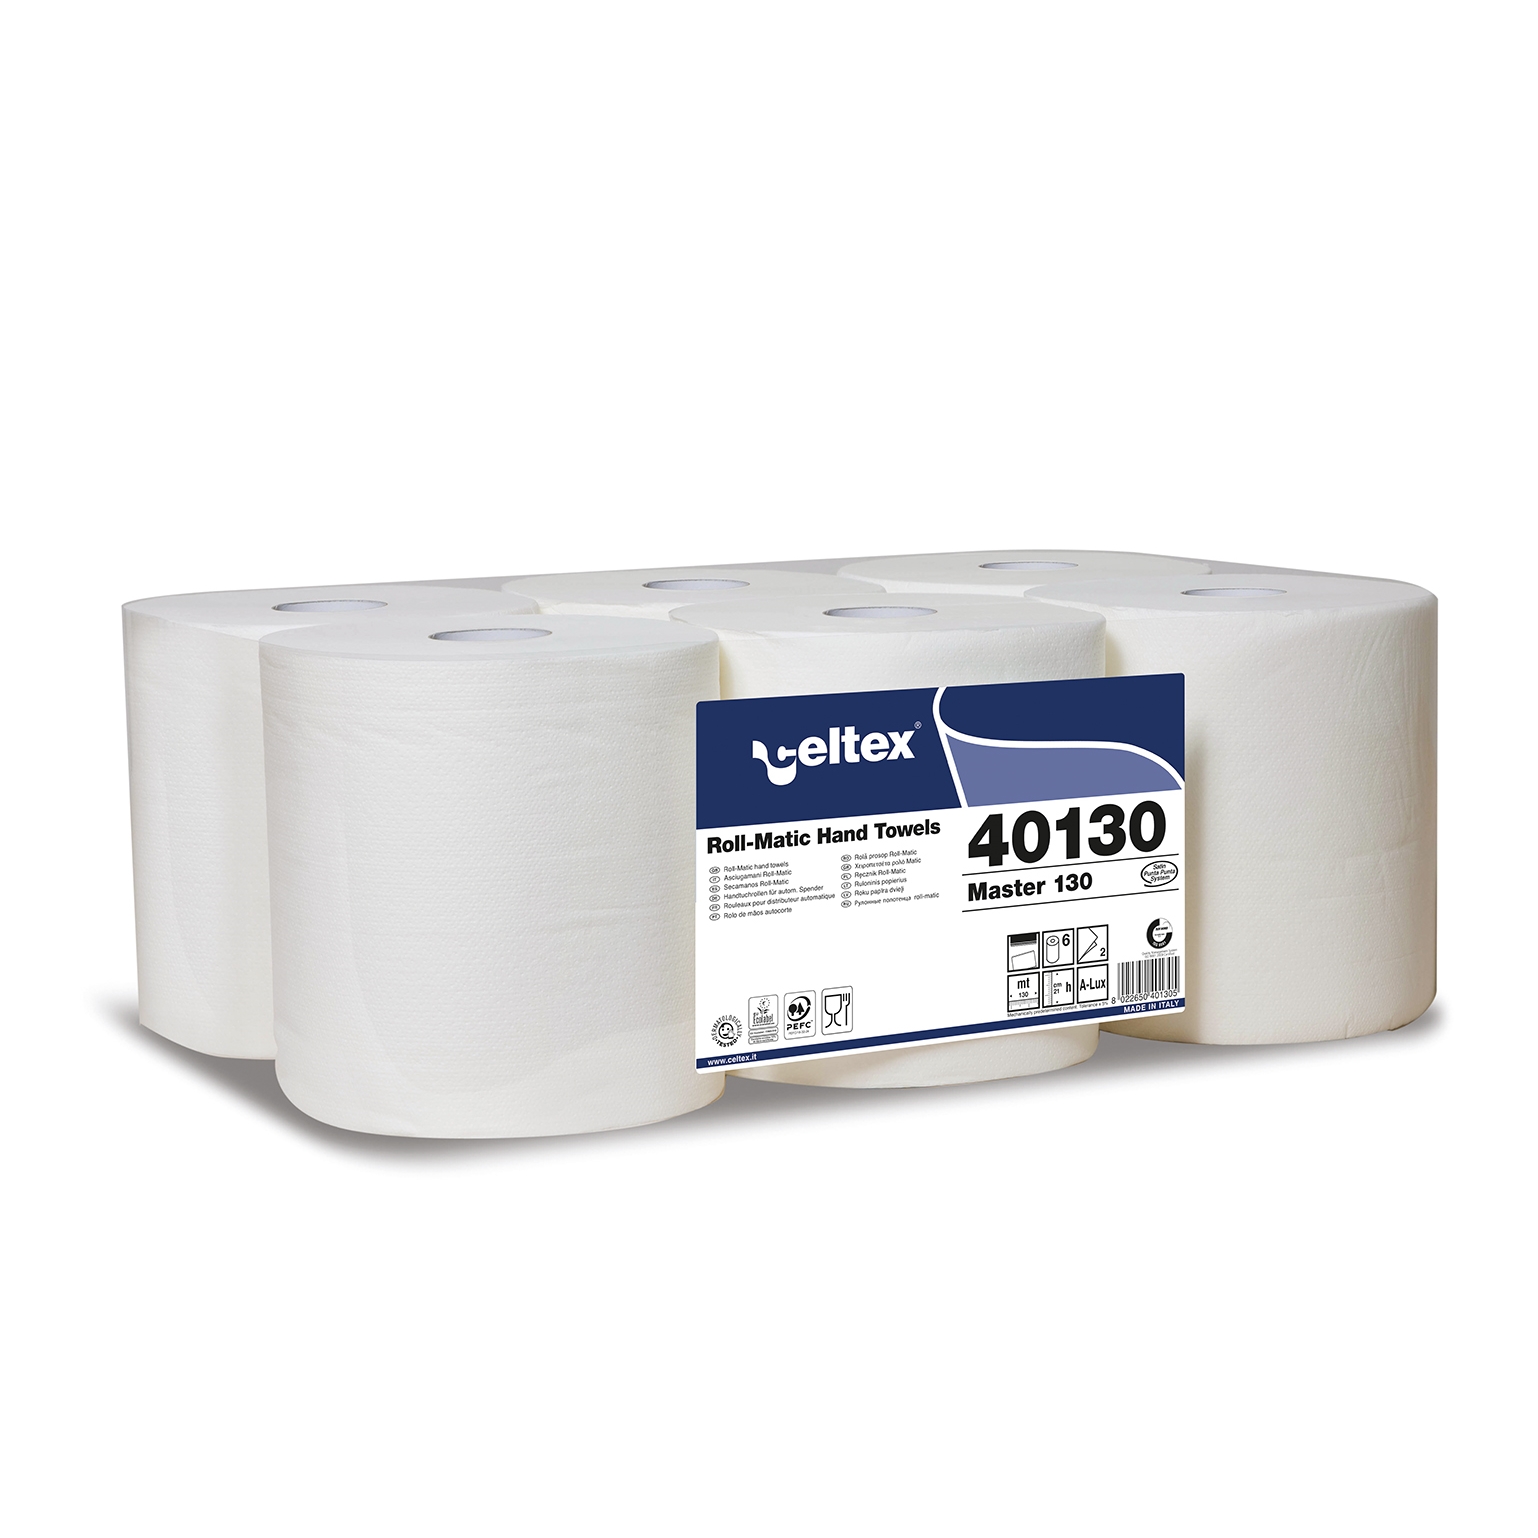 Papírové ručníky Celtex 40130 Master 130, role, 2 vrstvy, bílá